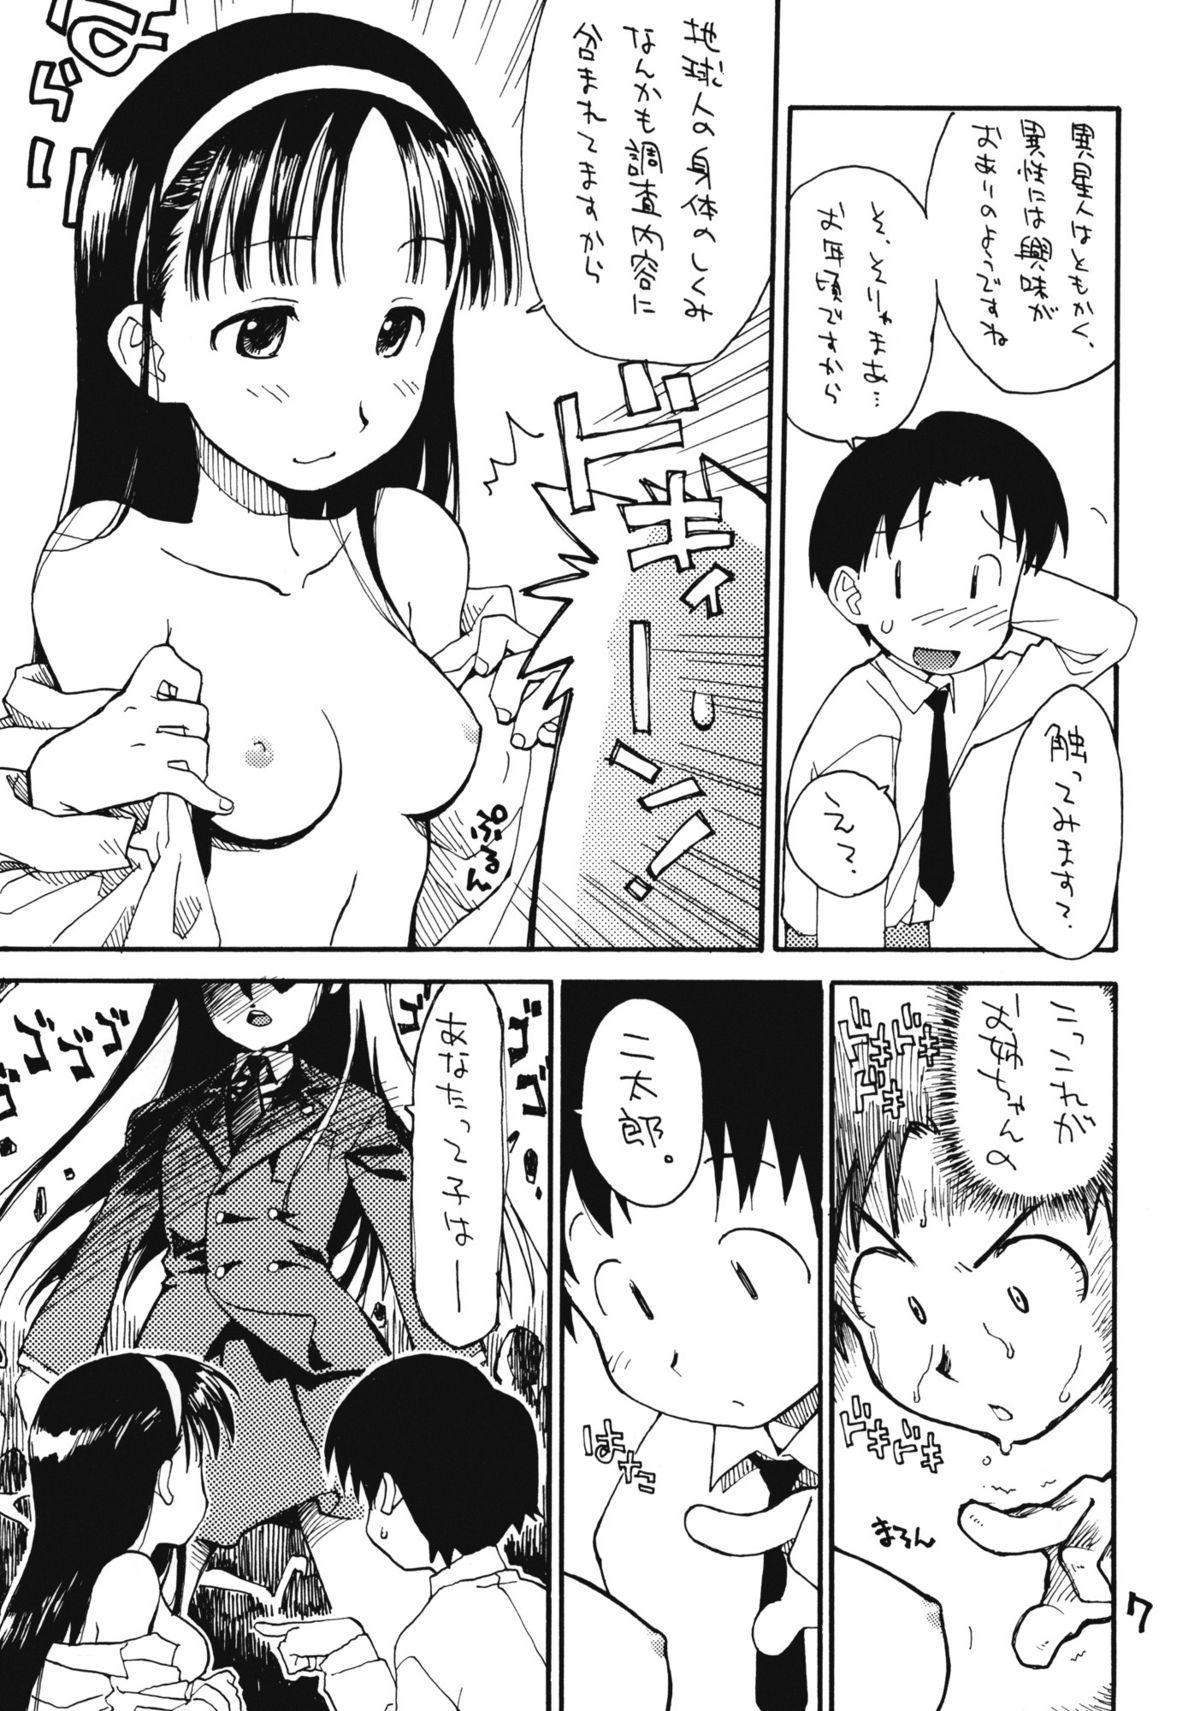 Anime N.H 4U Amature Sex - Page 6